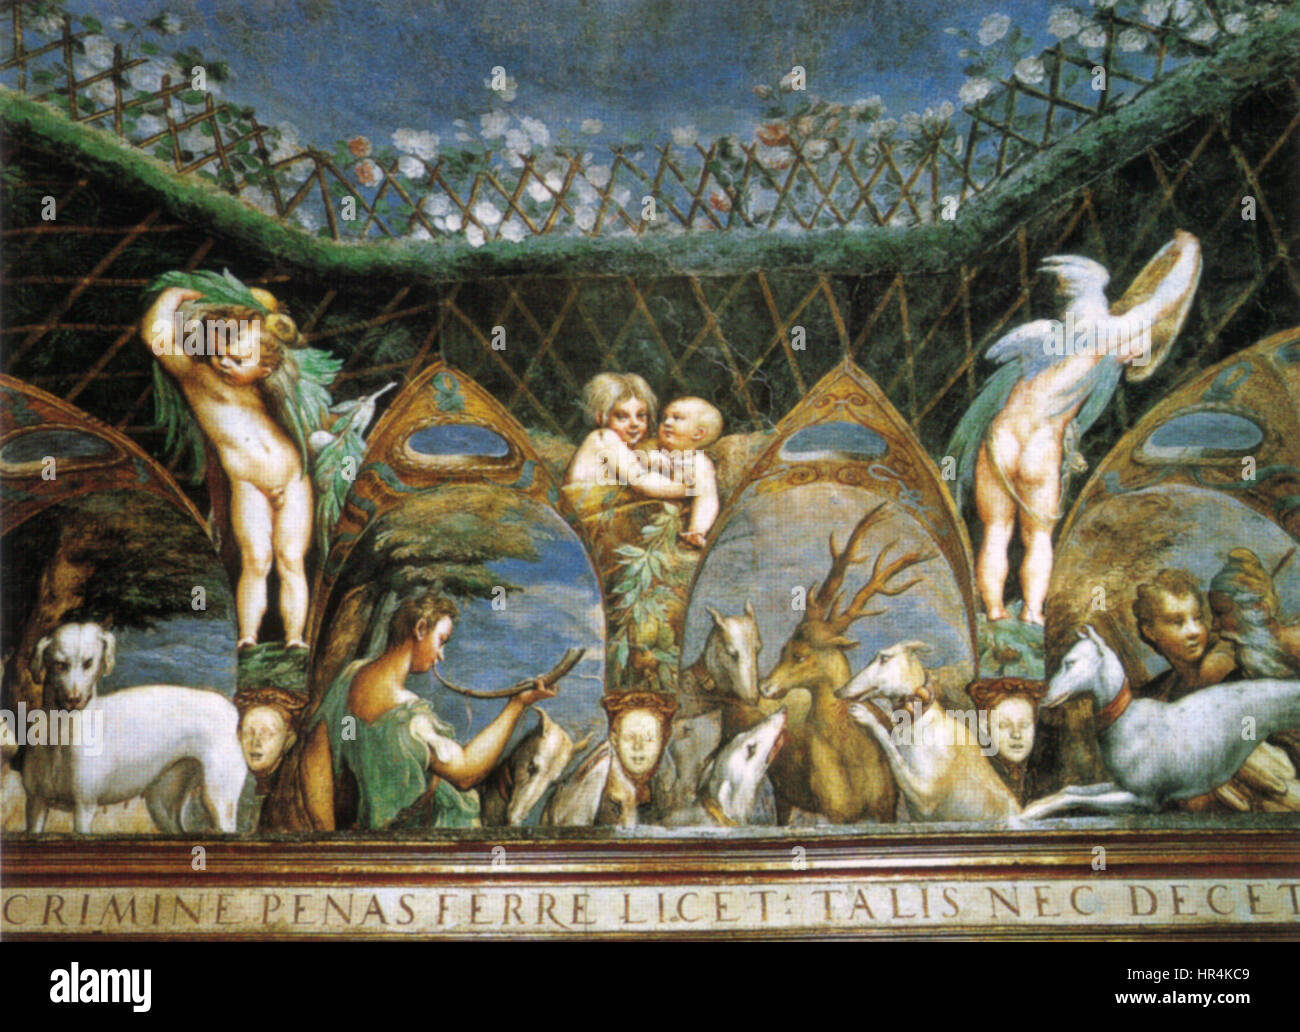 Parmigianino, affreschi di fontanellato 03 Stock Photo